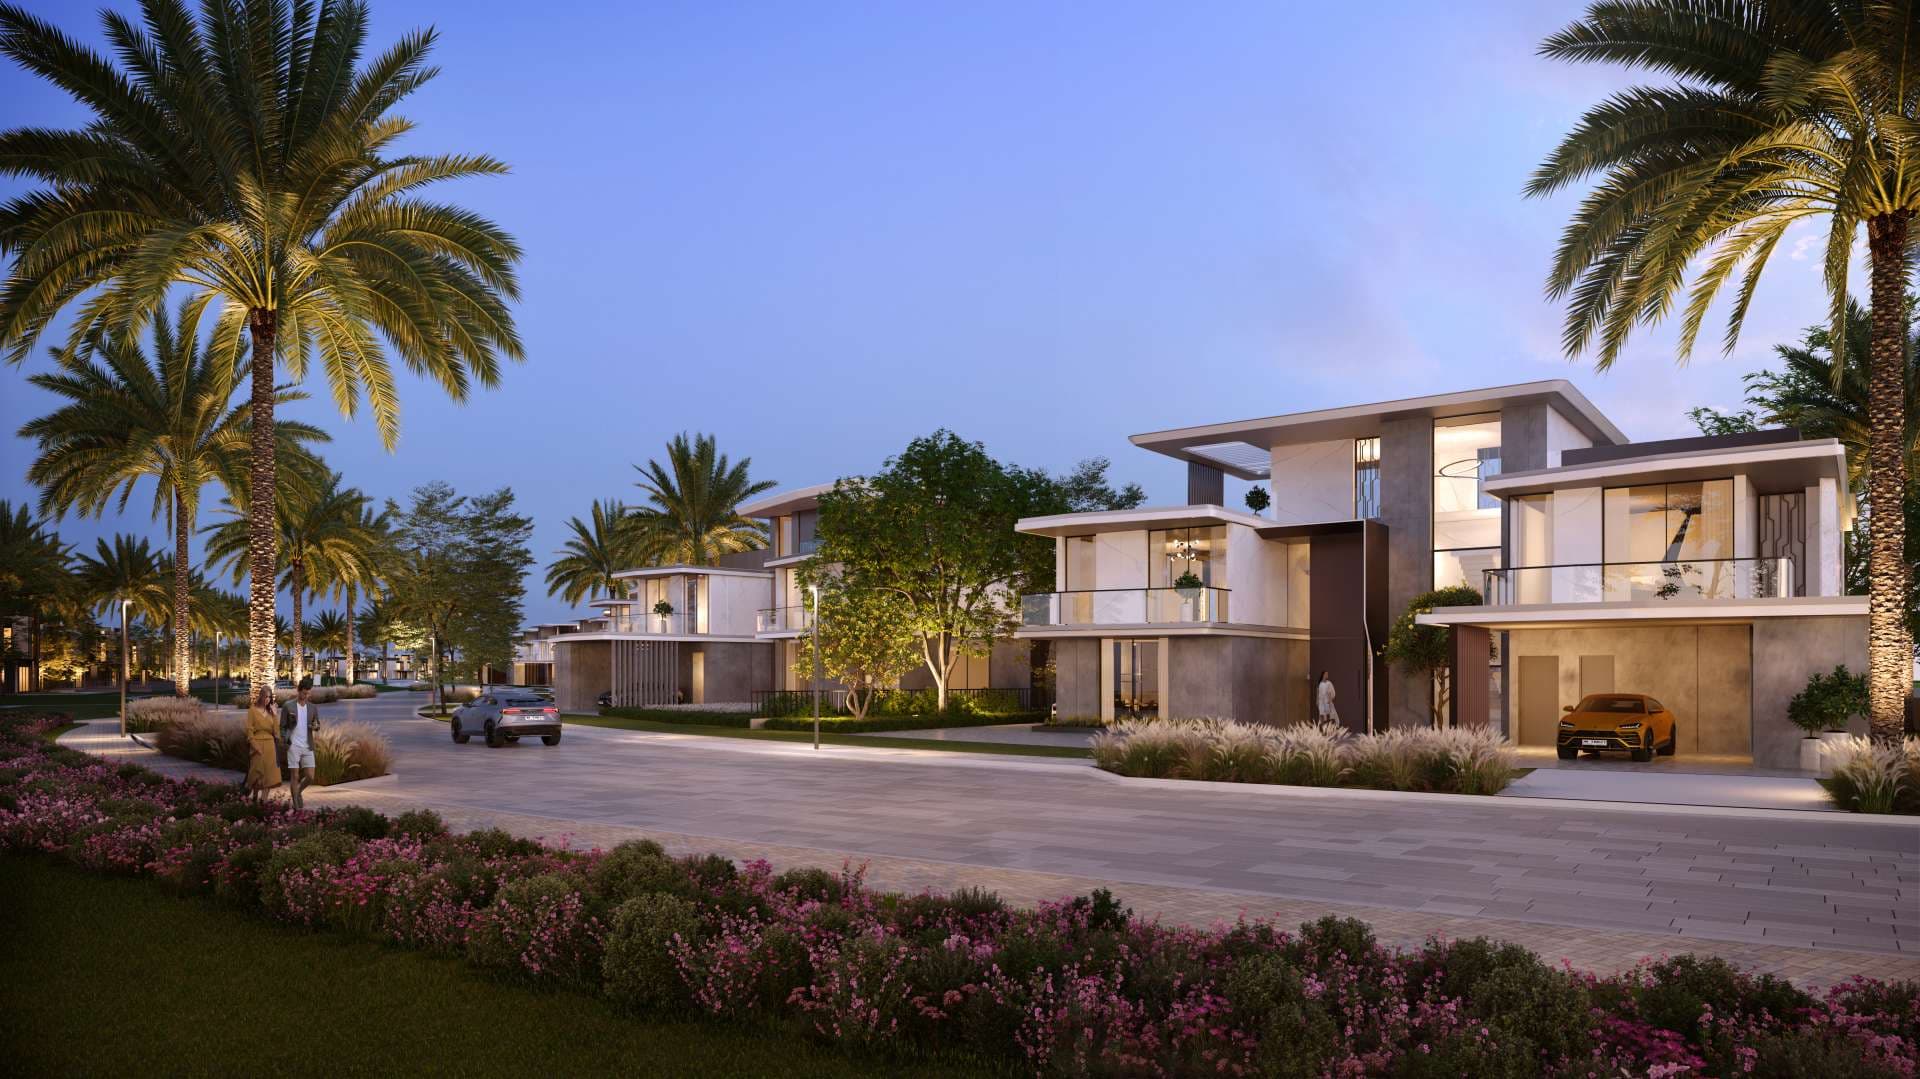 6 Bedroom Villa For Sale Dubai Hills Vista Lp07557 1321a962c36a0800.jpg